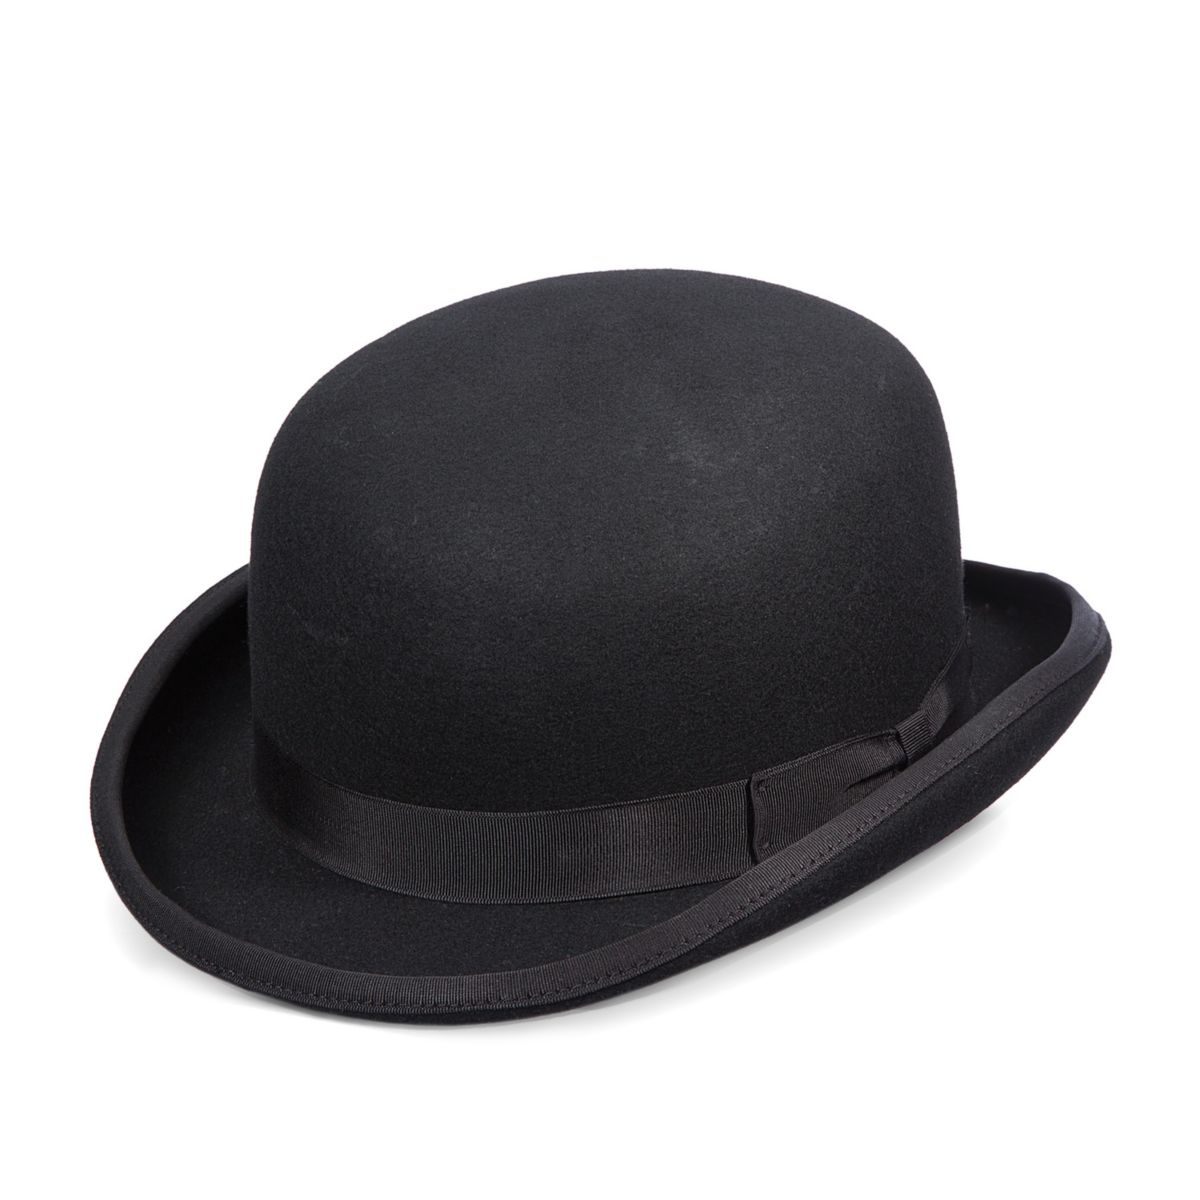 Bowler hat. Боулер дерби шляпа. Scala шляпа мужская. Шляпа котелок. Шляпа котелок мужская.